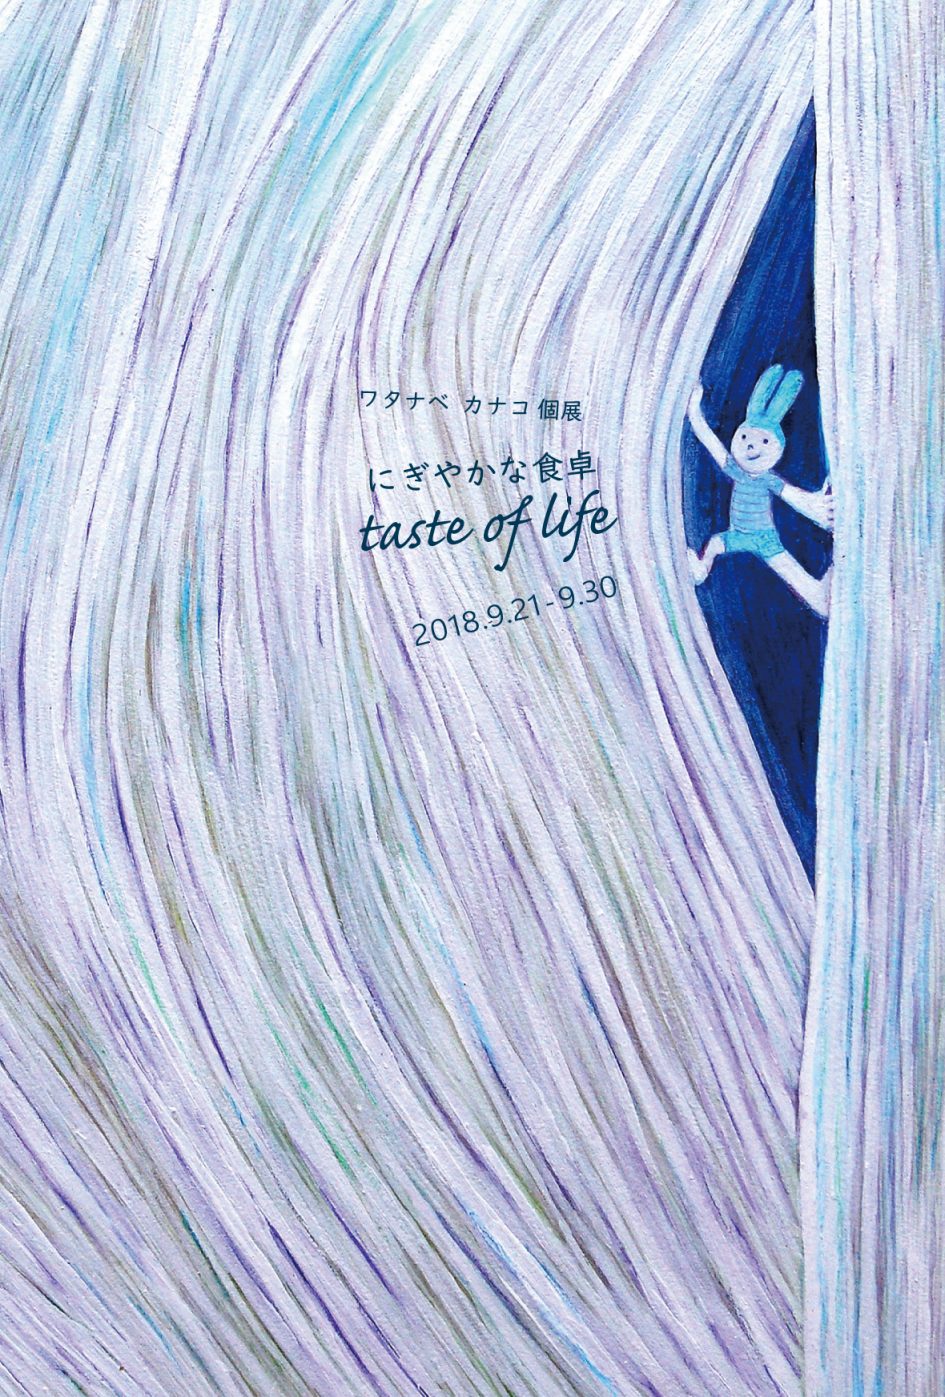 ワタナベ カナコ 個展 「にぎやかな食卓 taste of life」 | gallery to+ 自由が丘駅前のギャラリー